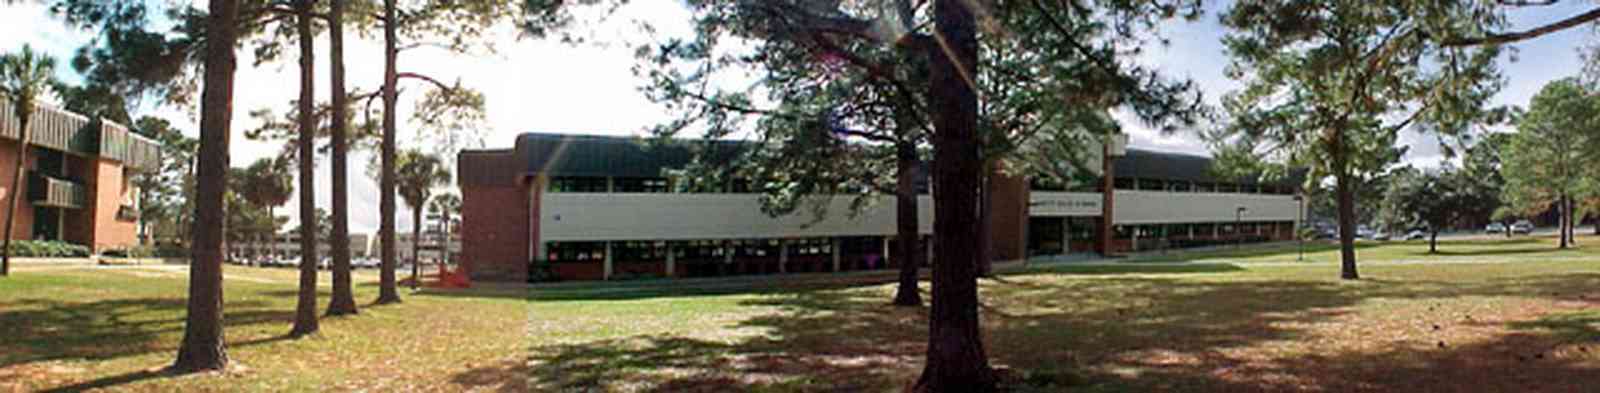 Pensacola:-Pensacola-Junior-College_04.jpg:  campus building, pine tree, college student